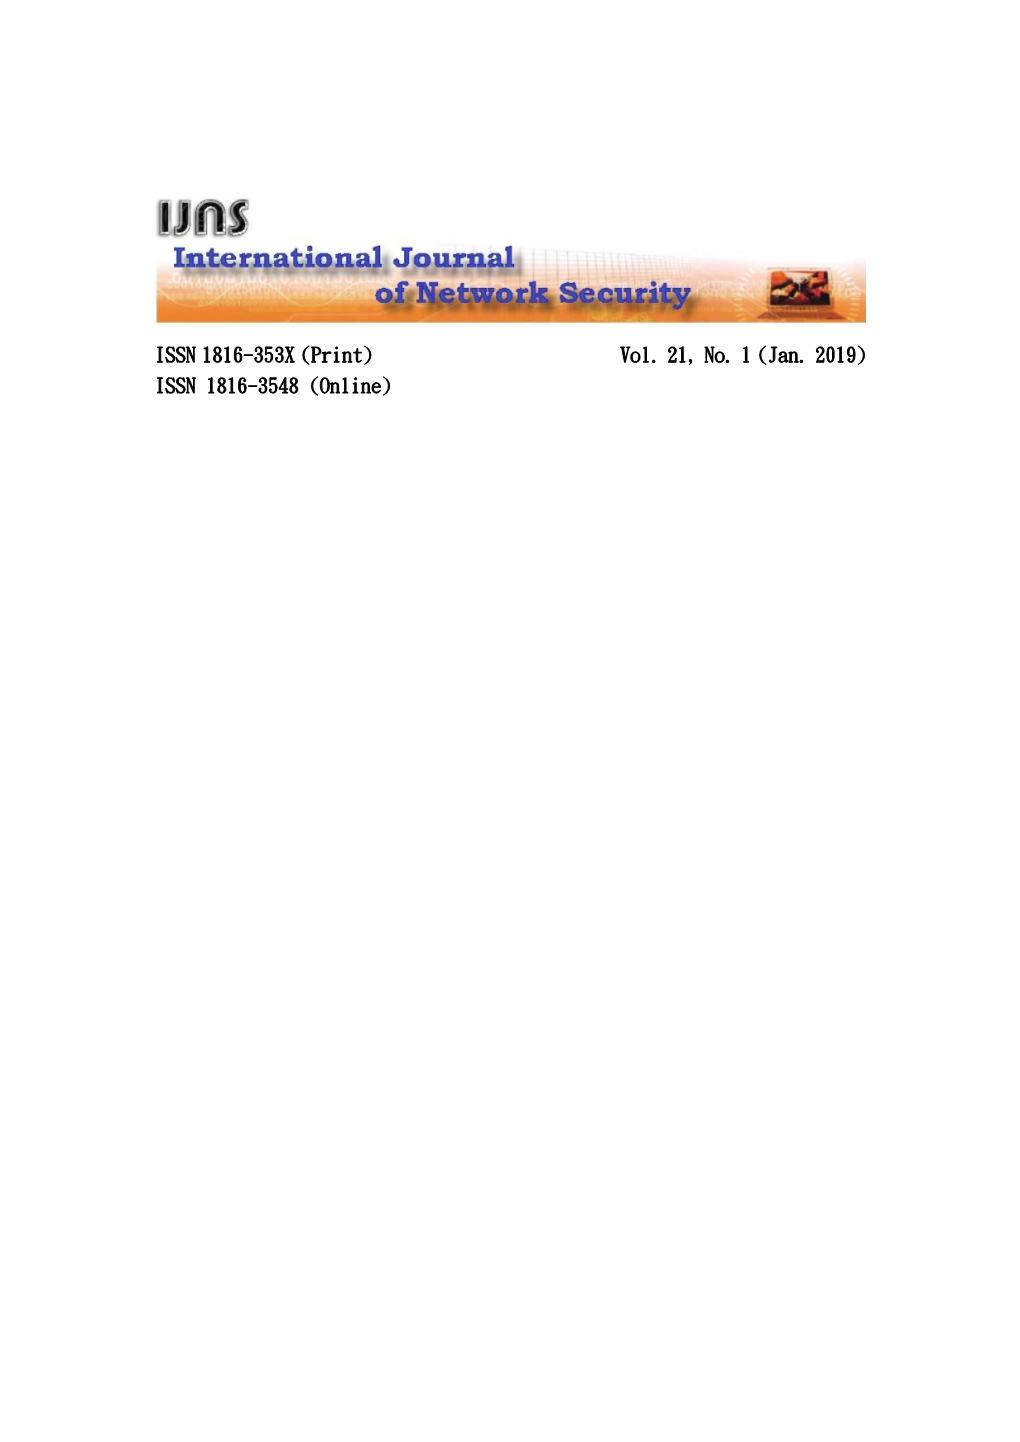 ISSN 1816-353X (Print) Vol. 21, No. 1 (Jan. 2019) ISSN 1816-3548 (Online)